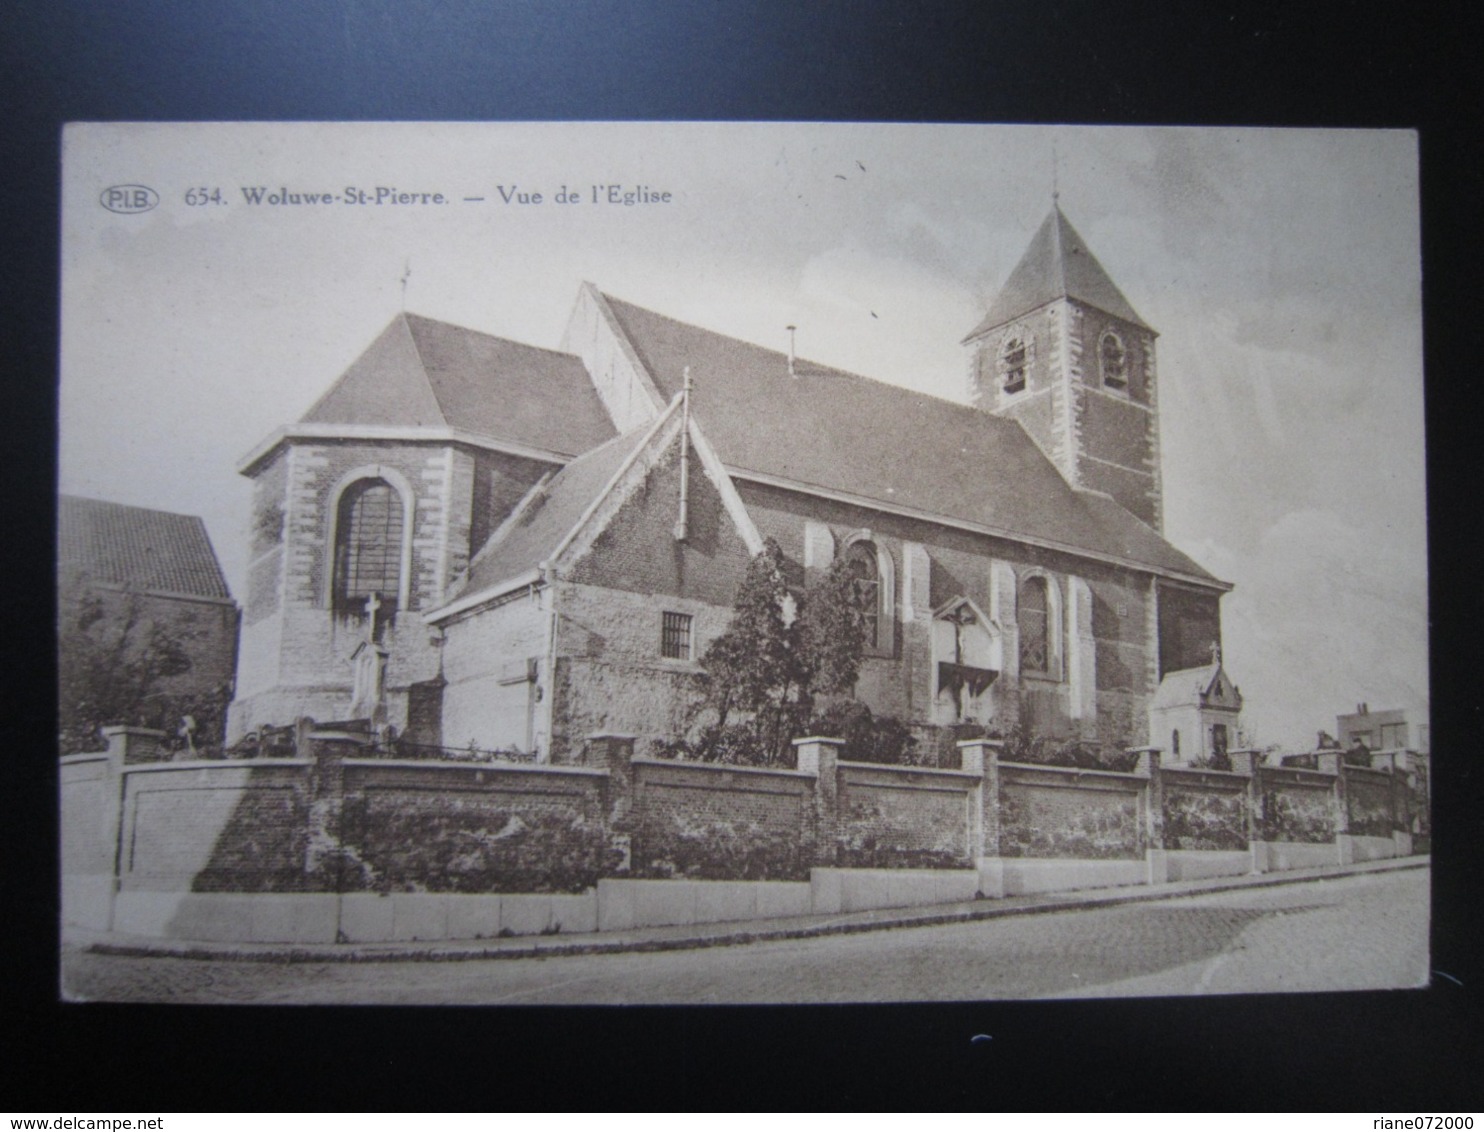 Woluwe - Saint - Pierre Vue De L'Eglise - Woluwe-St-Pierre - St-Pieters-Woluwe